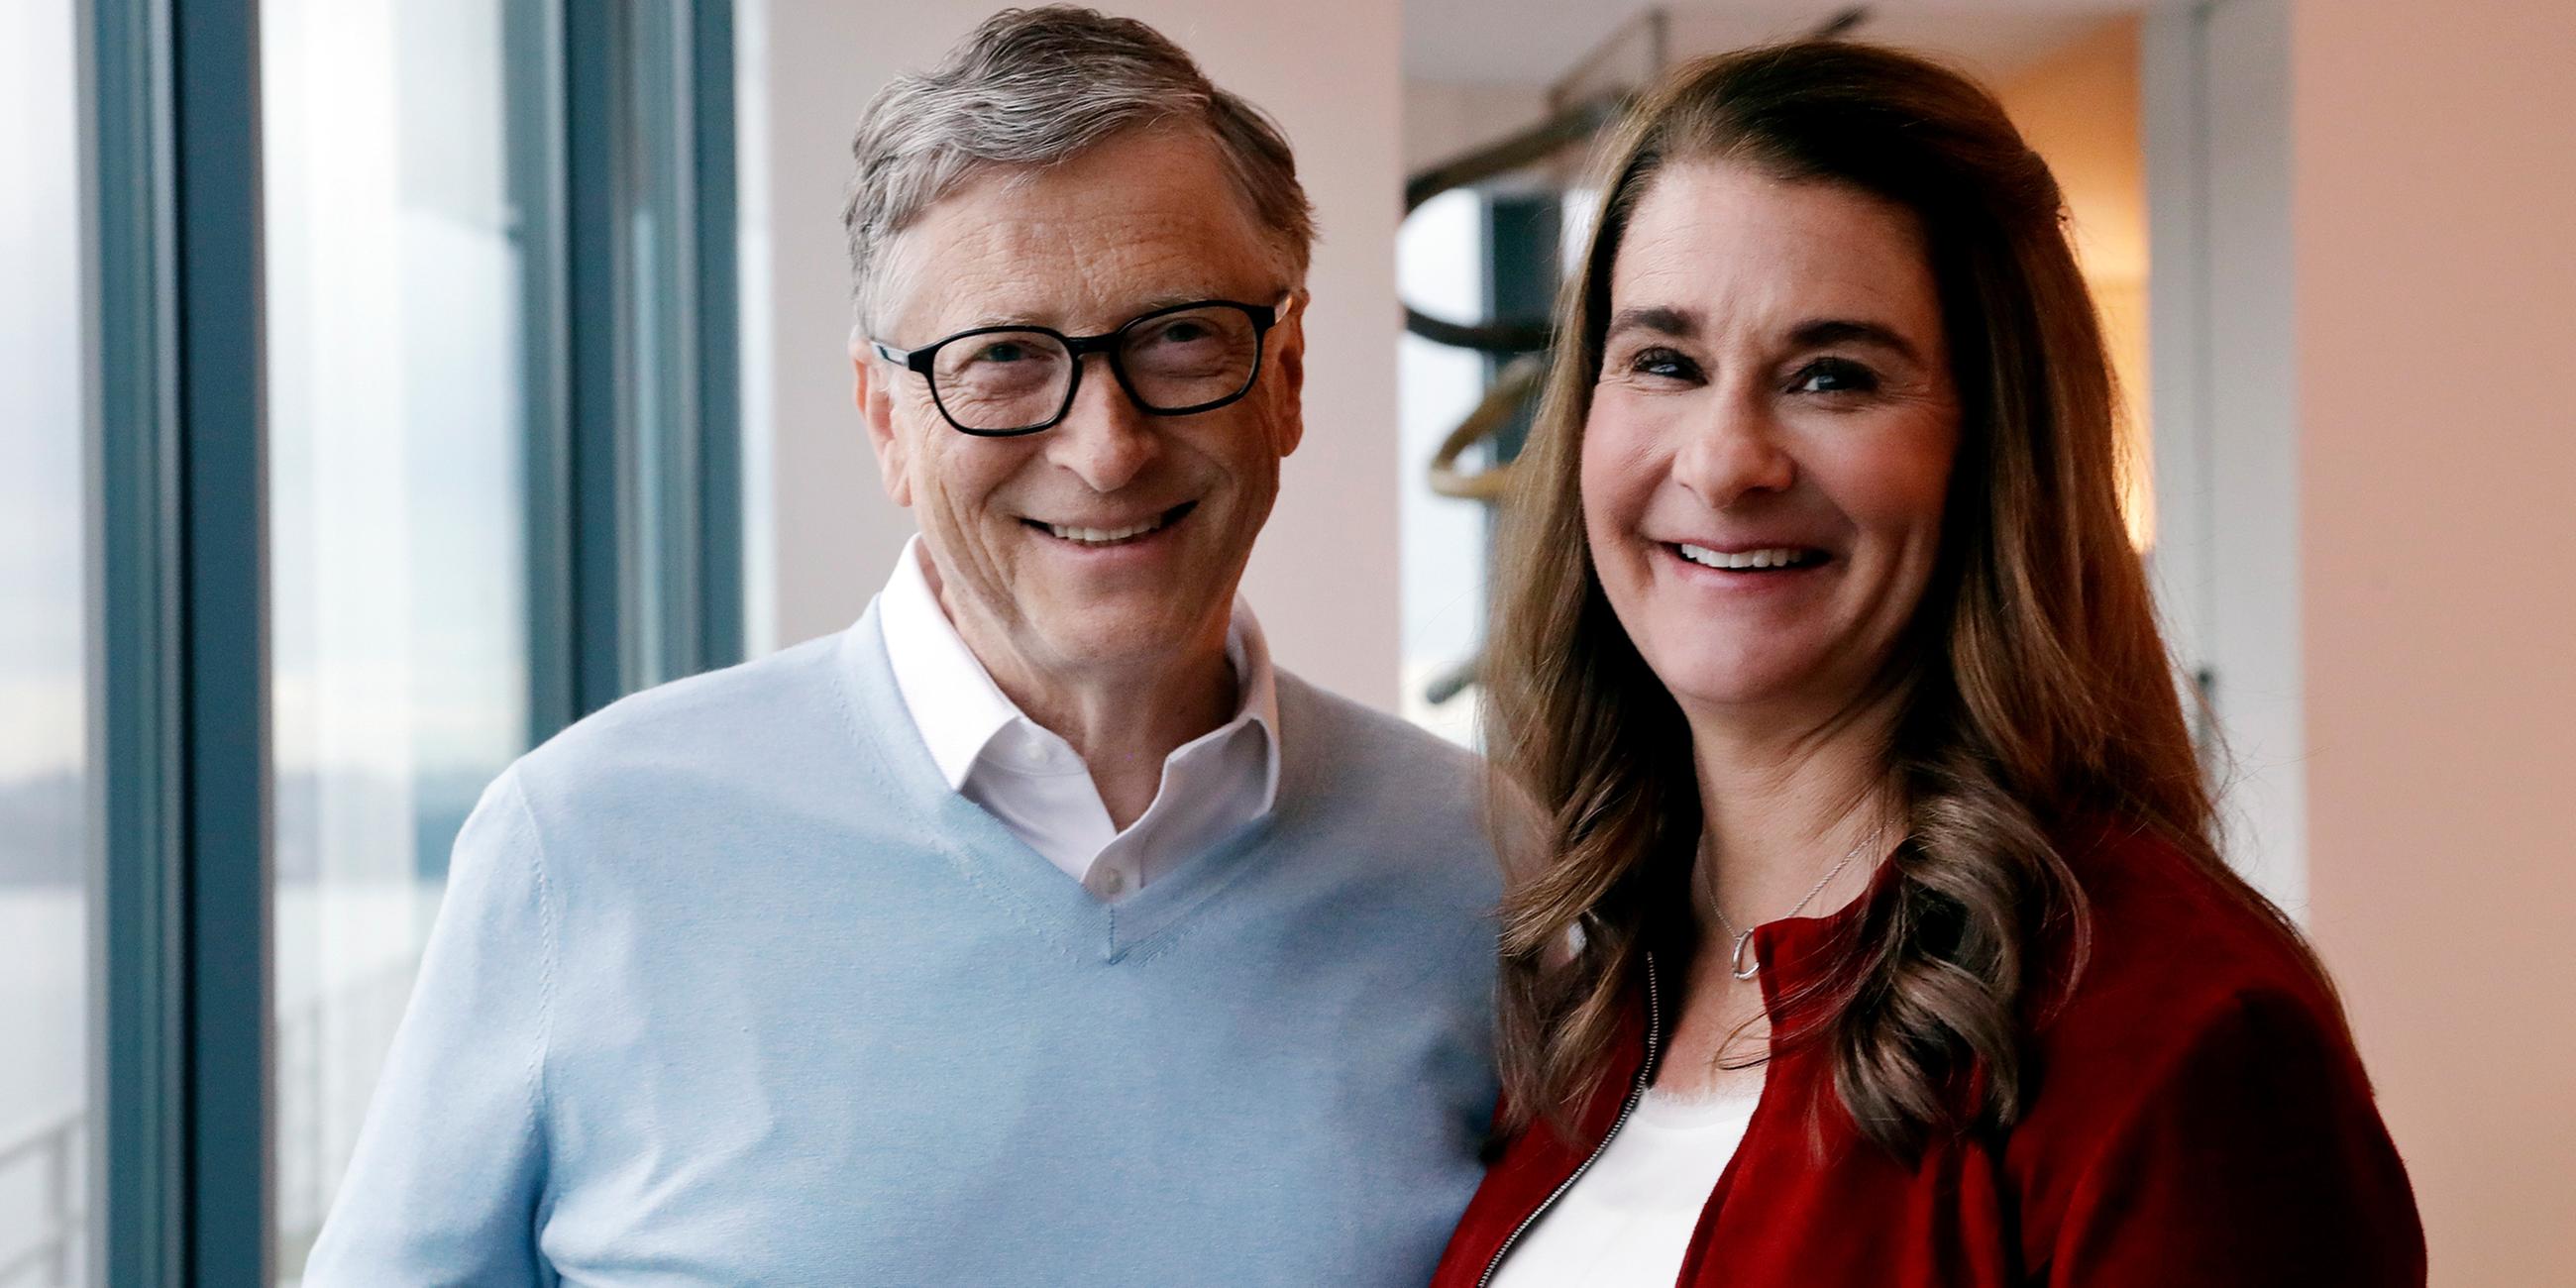 Archiv: Bill und Melinda Gates am 31.01.2019